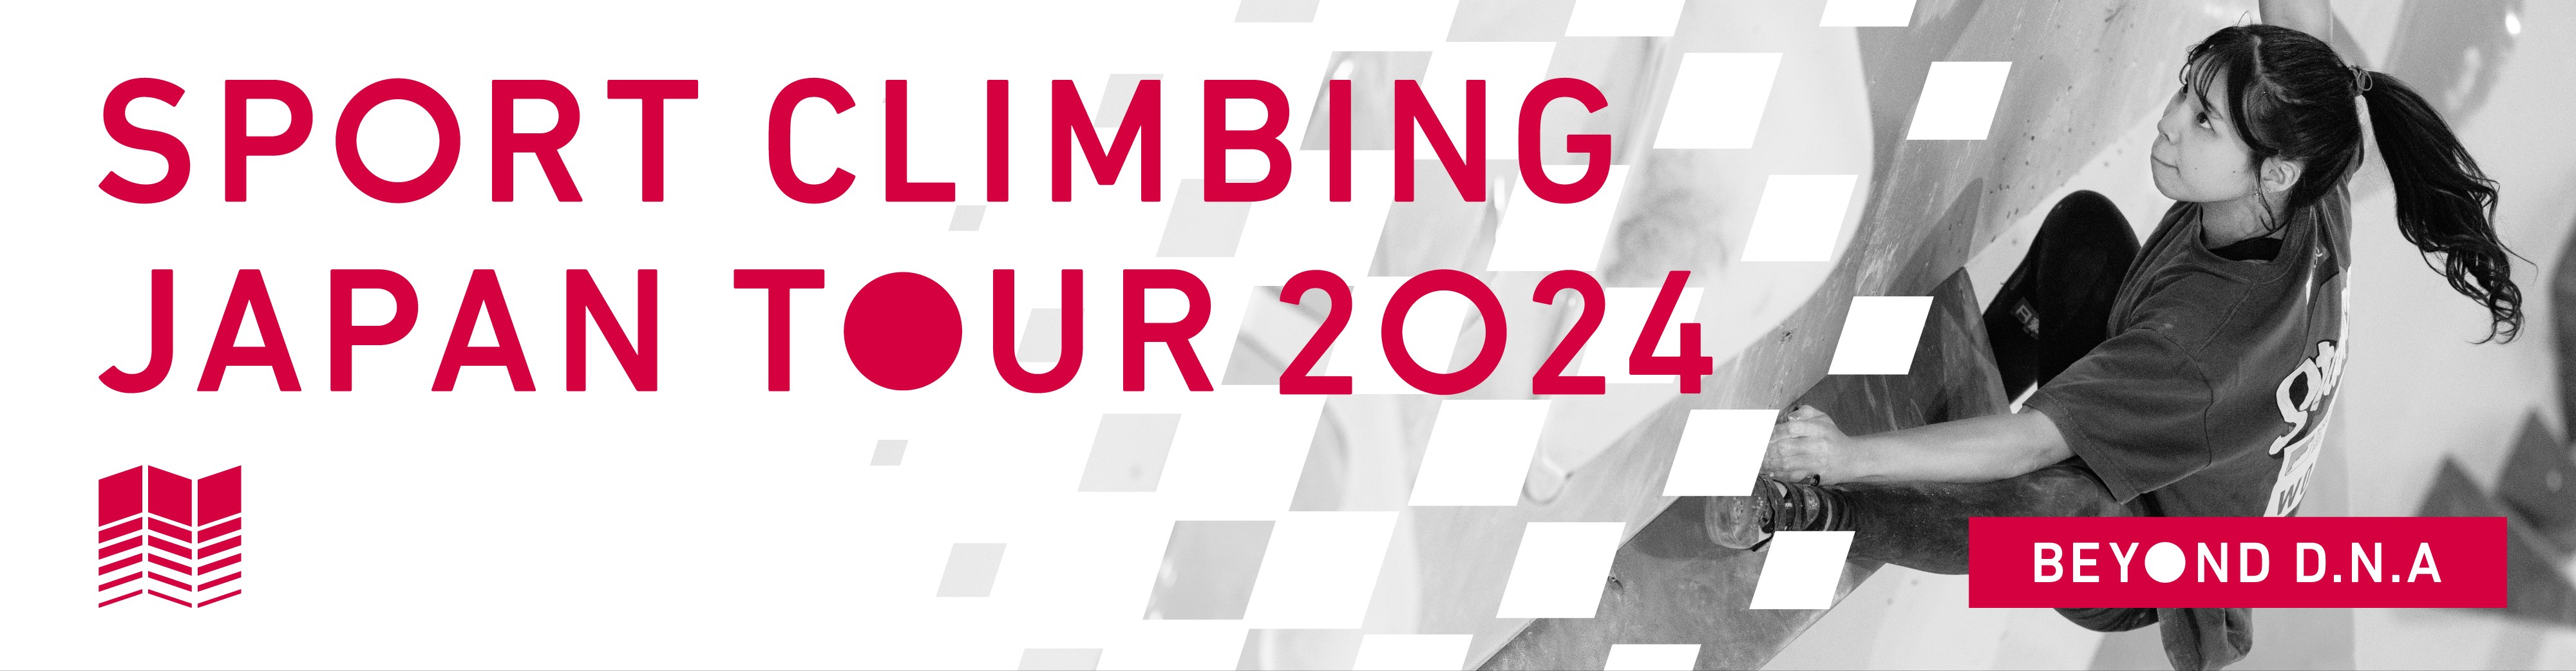 SPORT CLIMBING JAPAN TOUR 2024